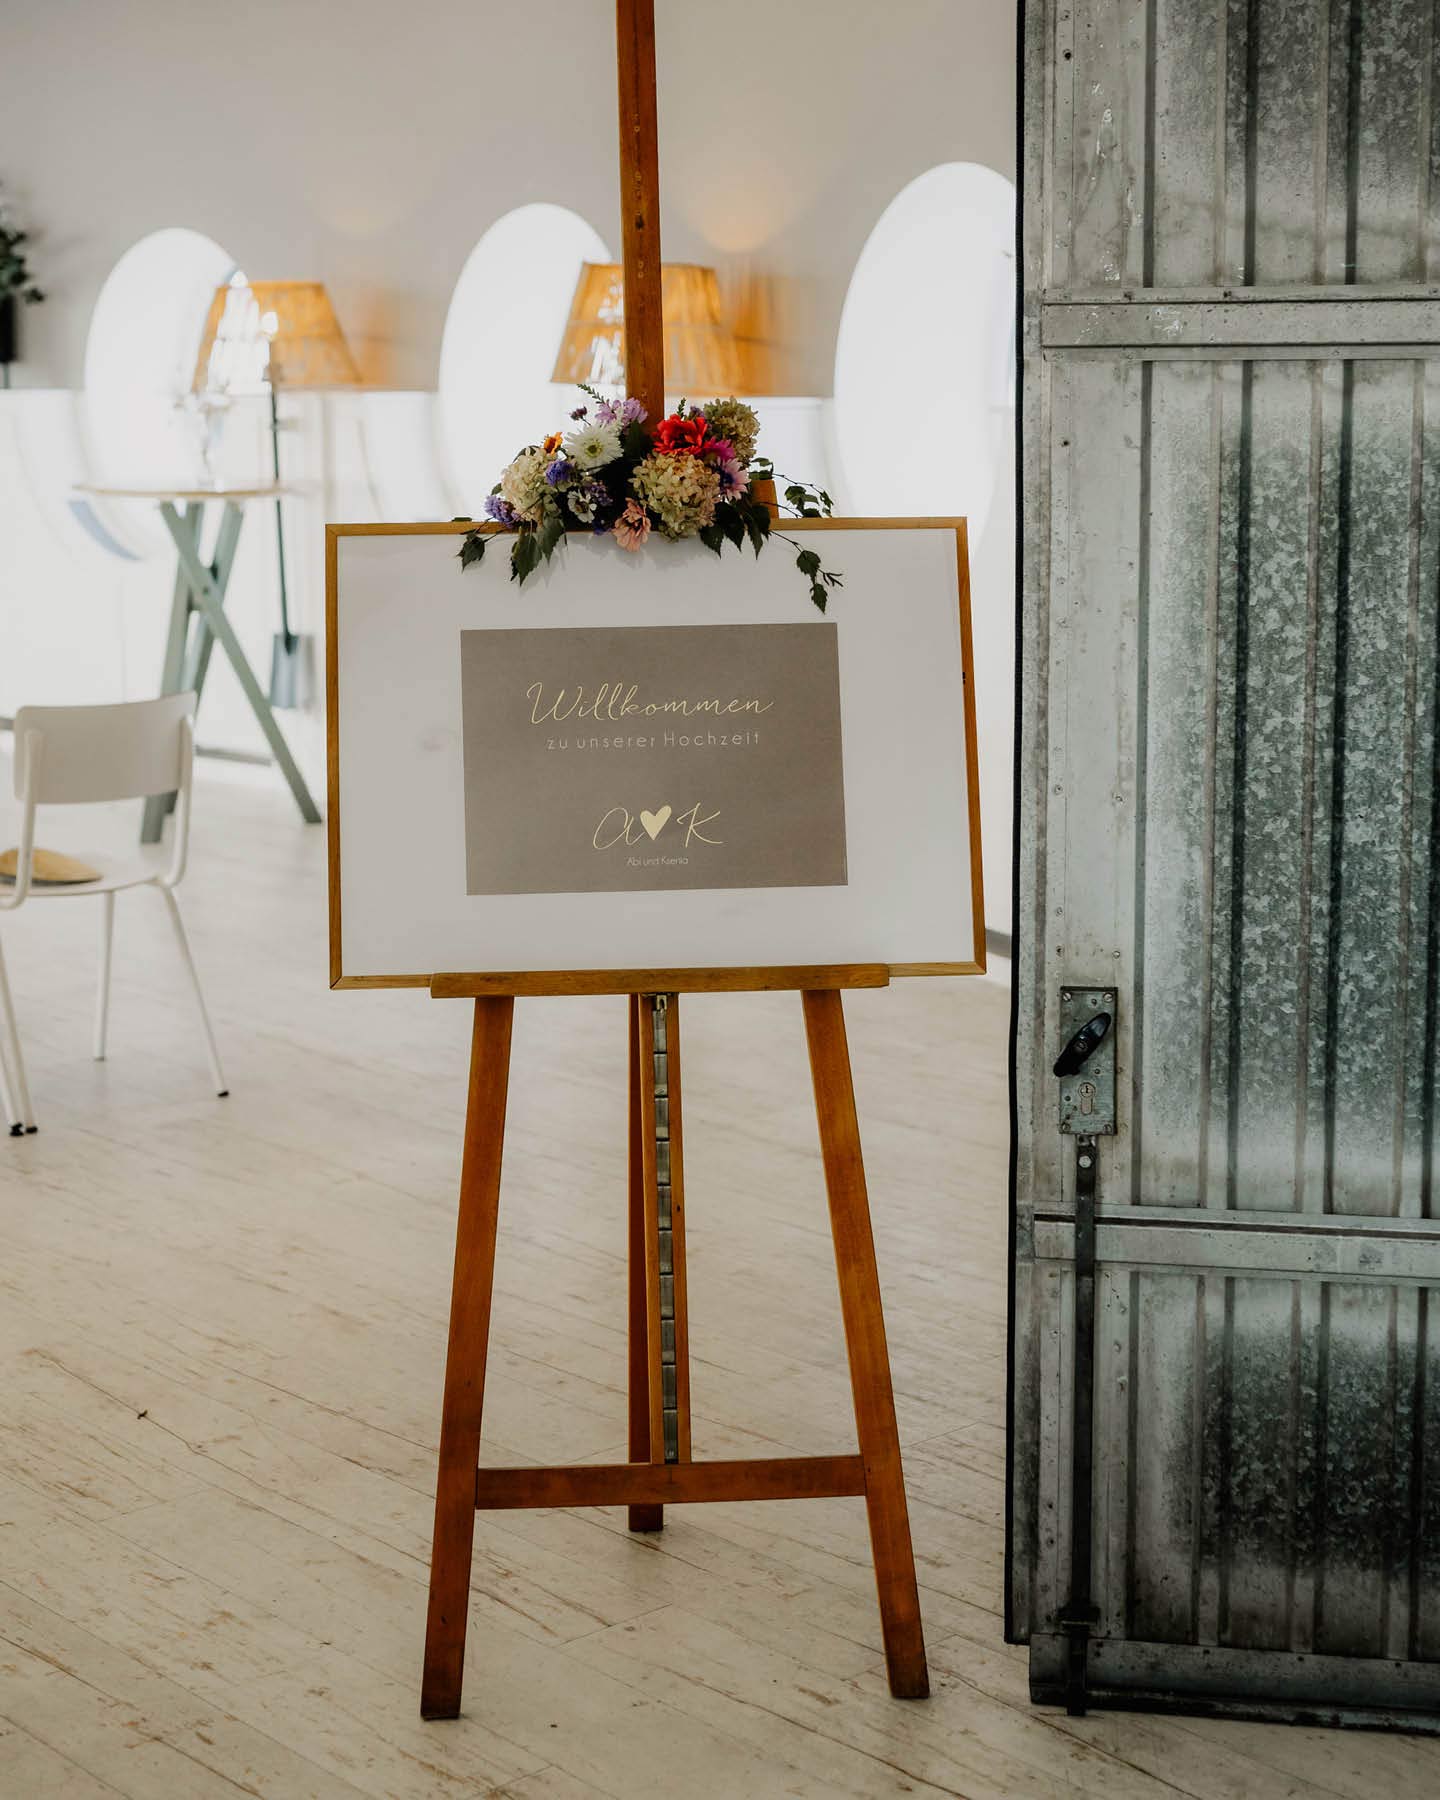 Willkommensschild im Kraftpapier-Look auf einer Staffelei begrüßt die Hochzeitsgäste